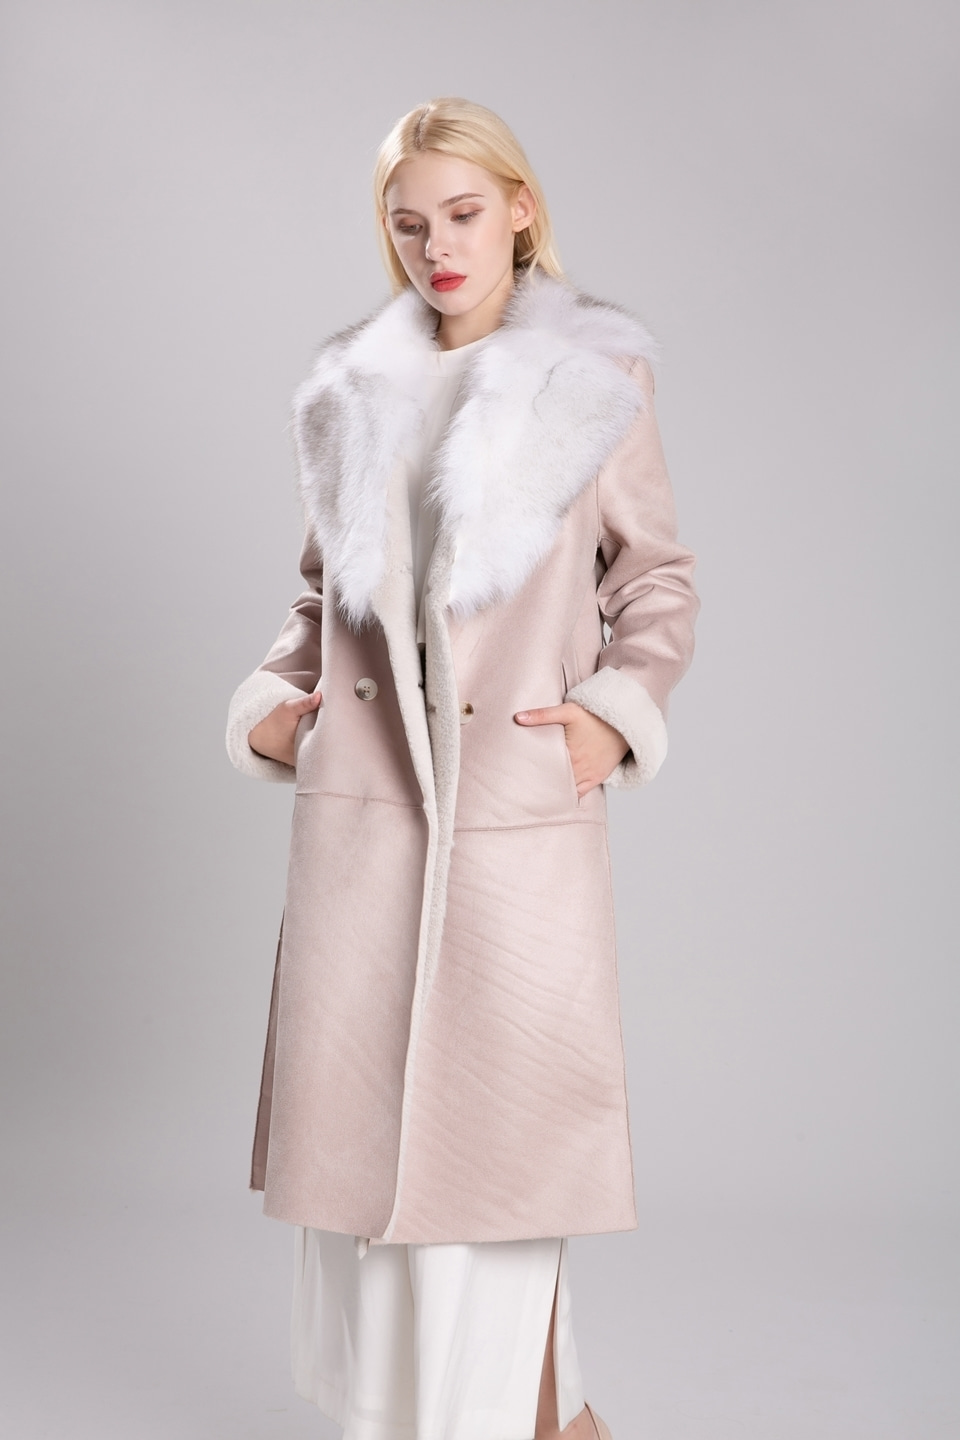 2019 fox fur fake mustang coat (baby pink)